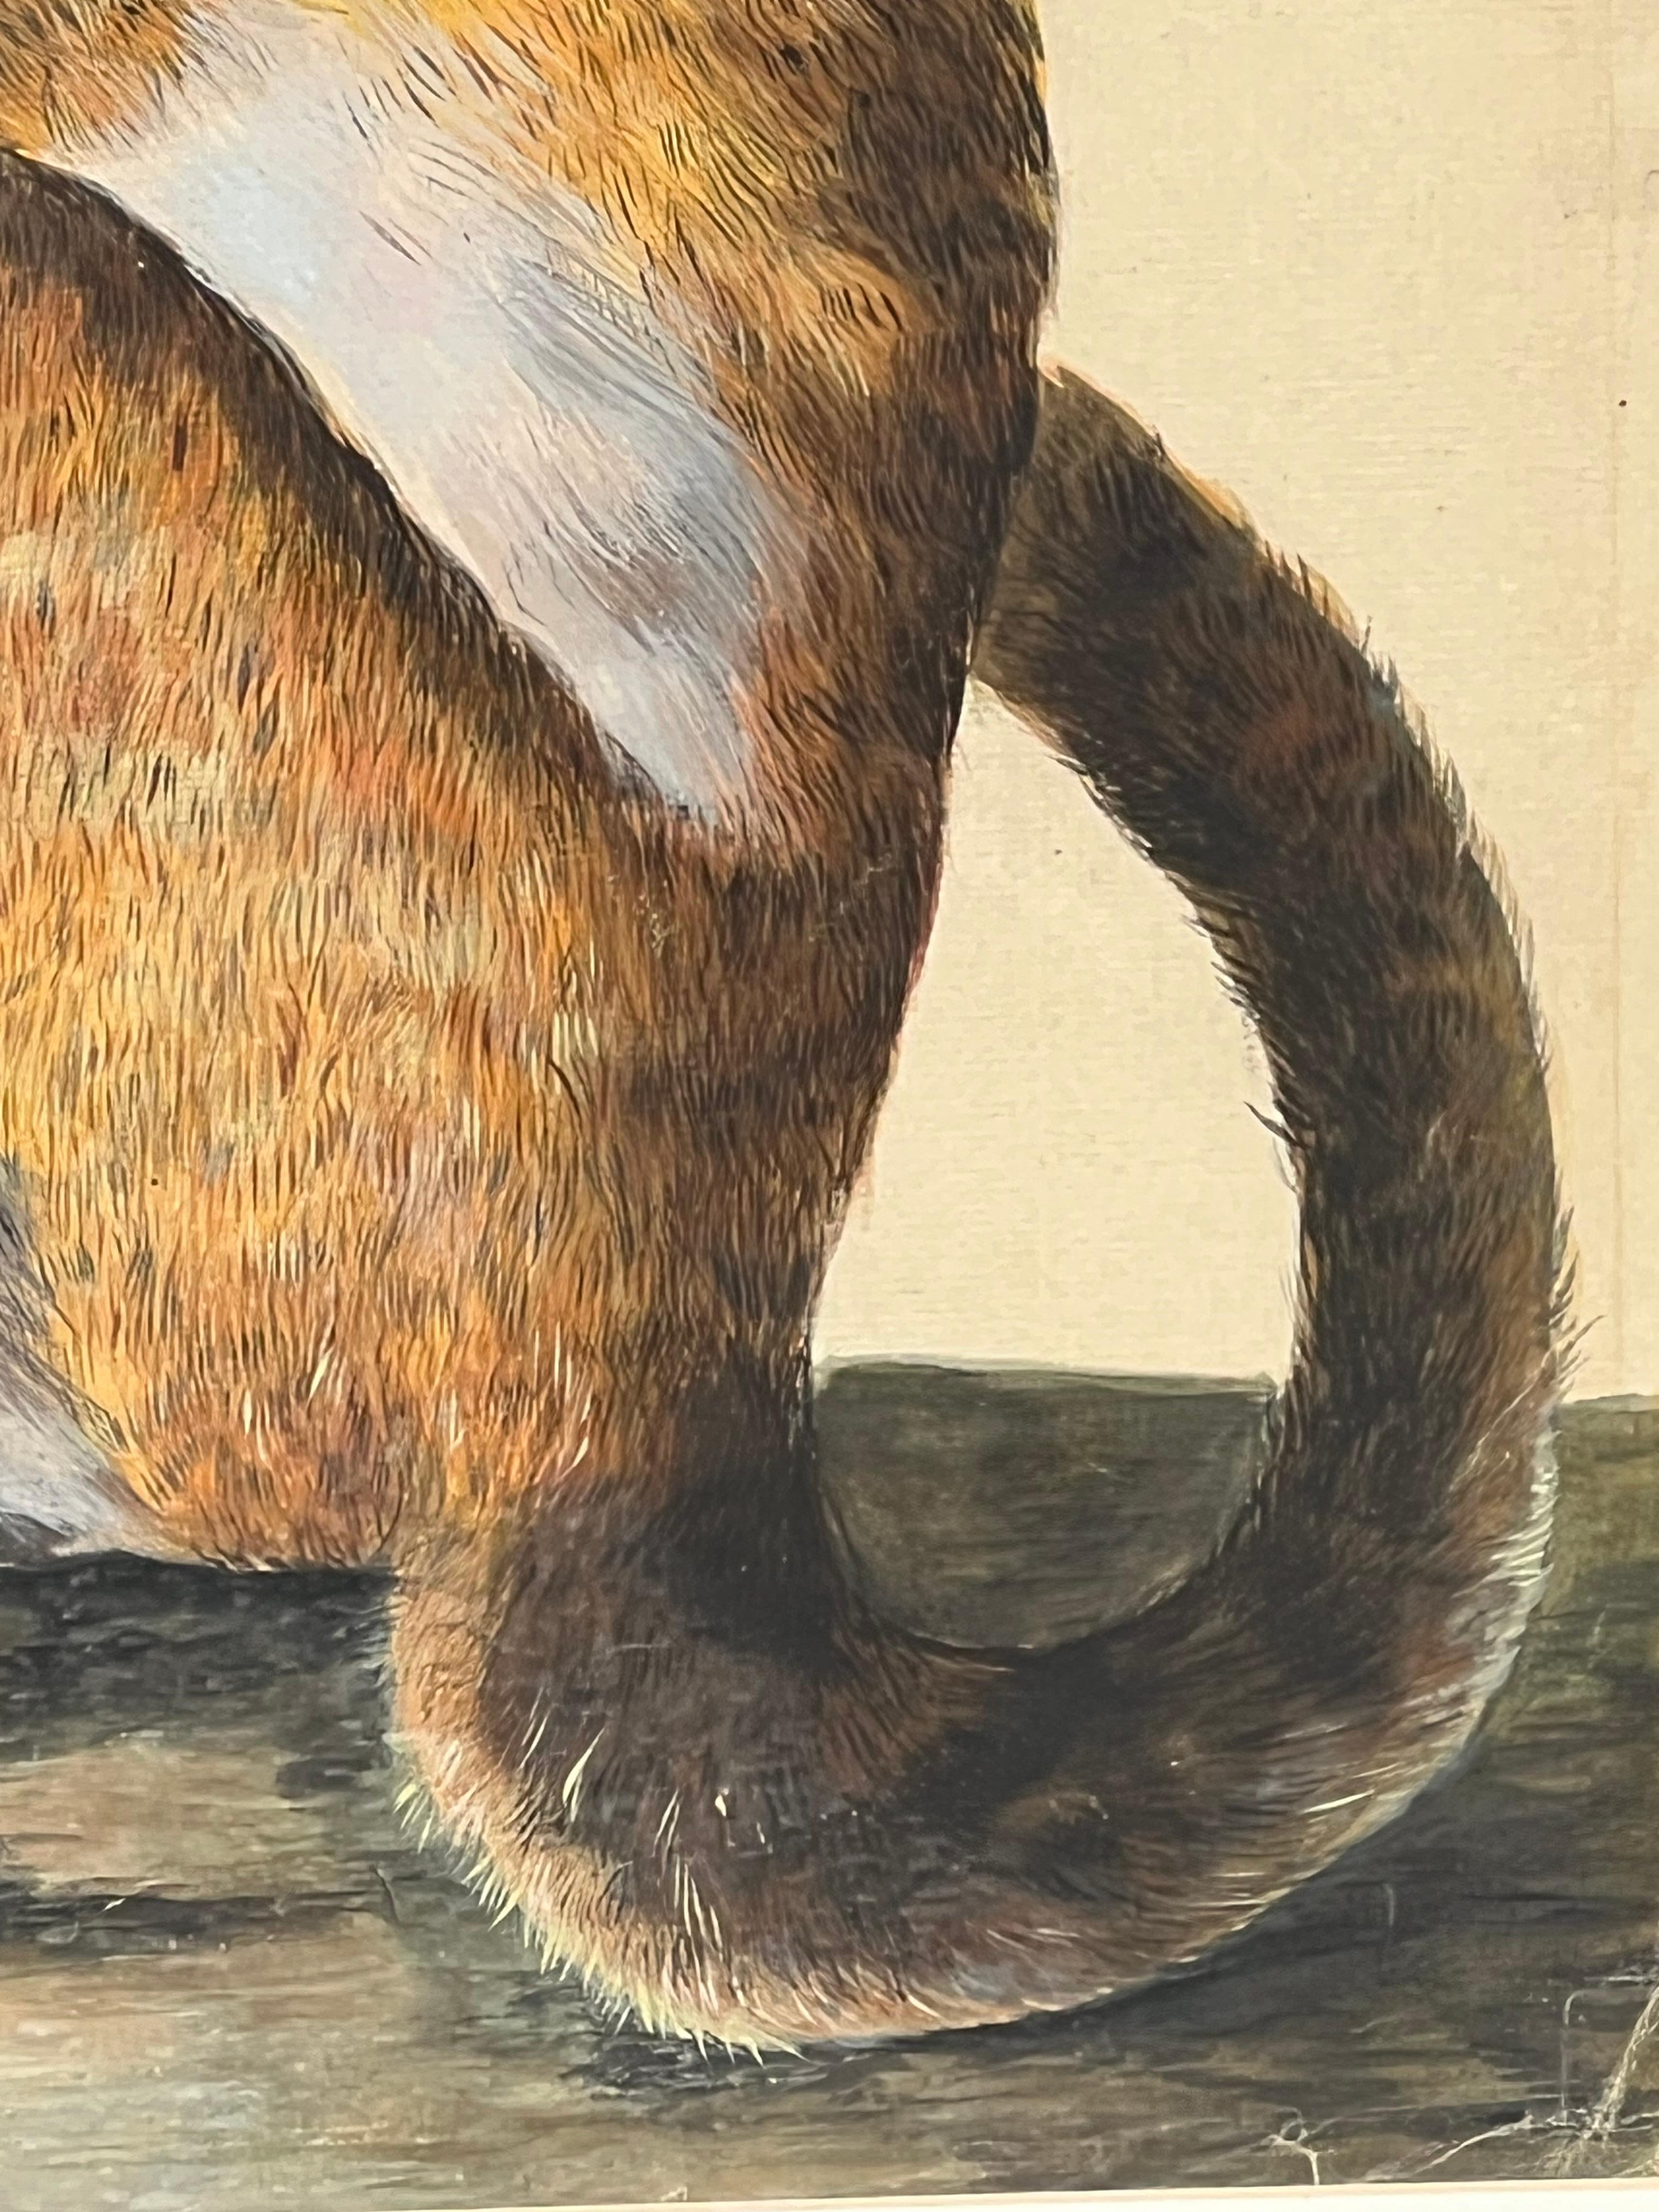 Représentation naturaliste précoce de la faune et de la flore par l'artiste anglais Peter Paillou. L'œuvre présente une représentation délicate d'un possible singe capucin provenant d'un spécimen du 18e siècle. Elle est actuellement accrochée dans